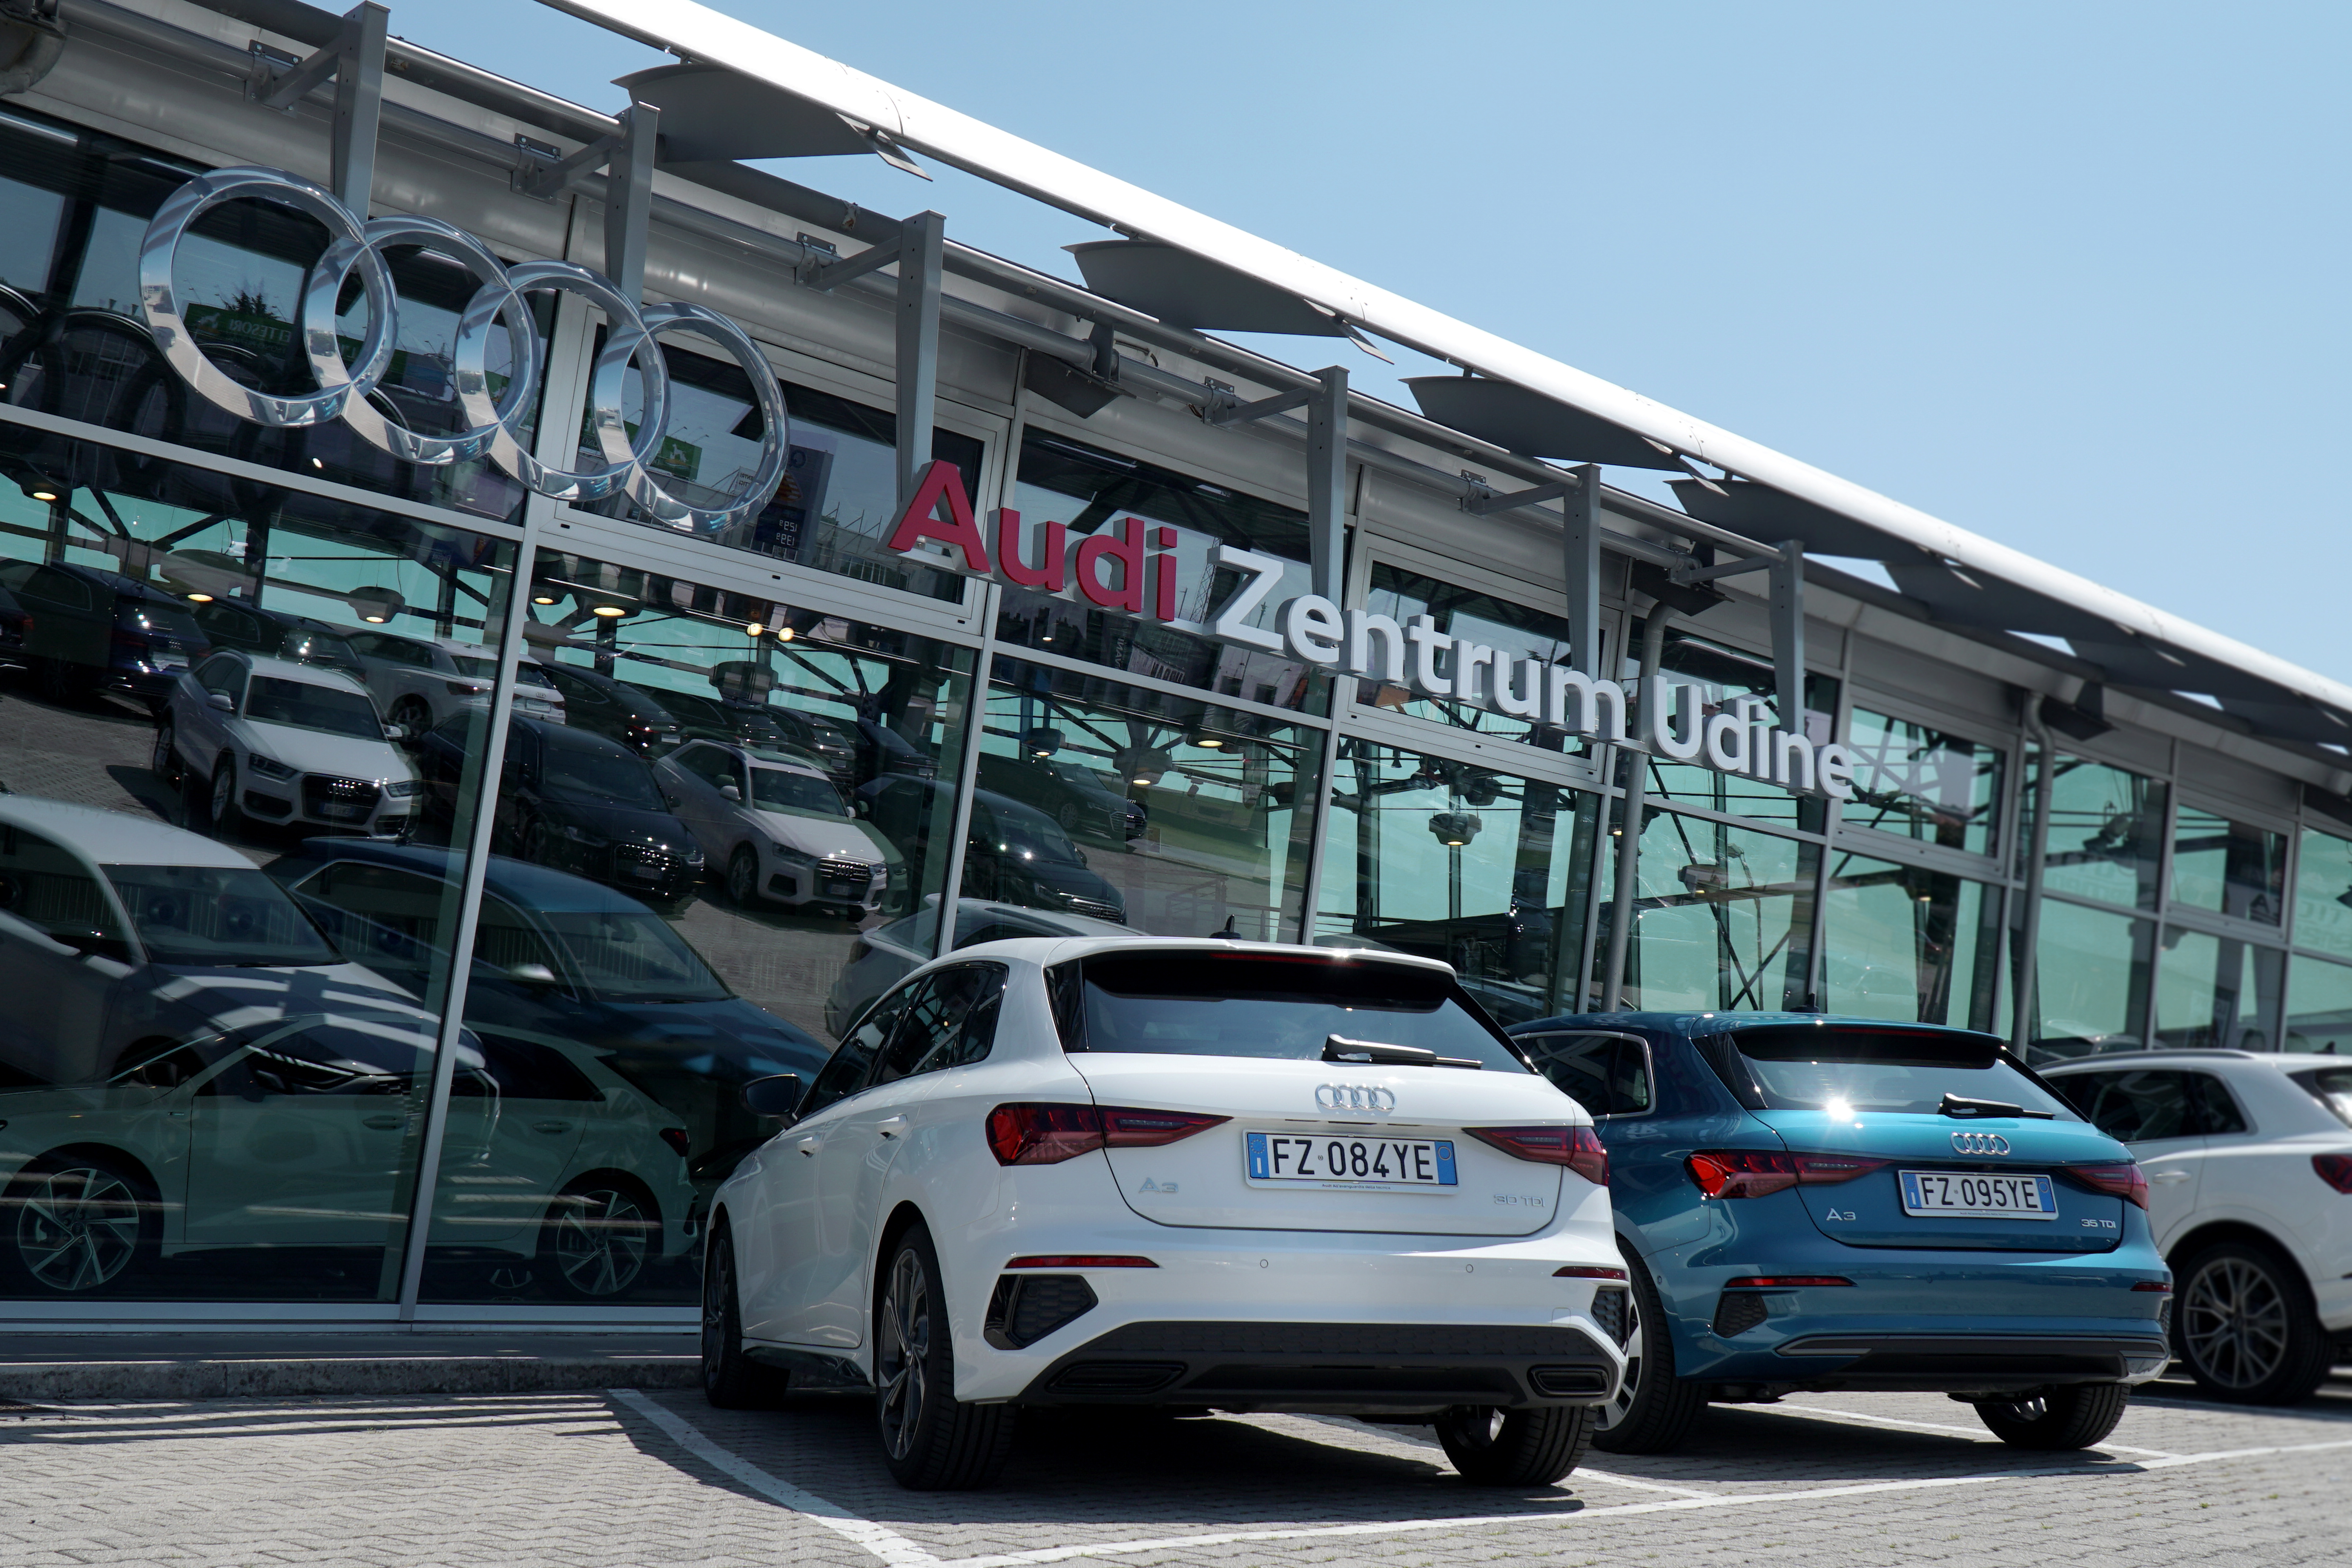 Audi Zentrum Udine